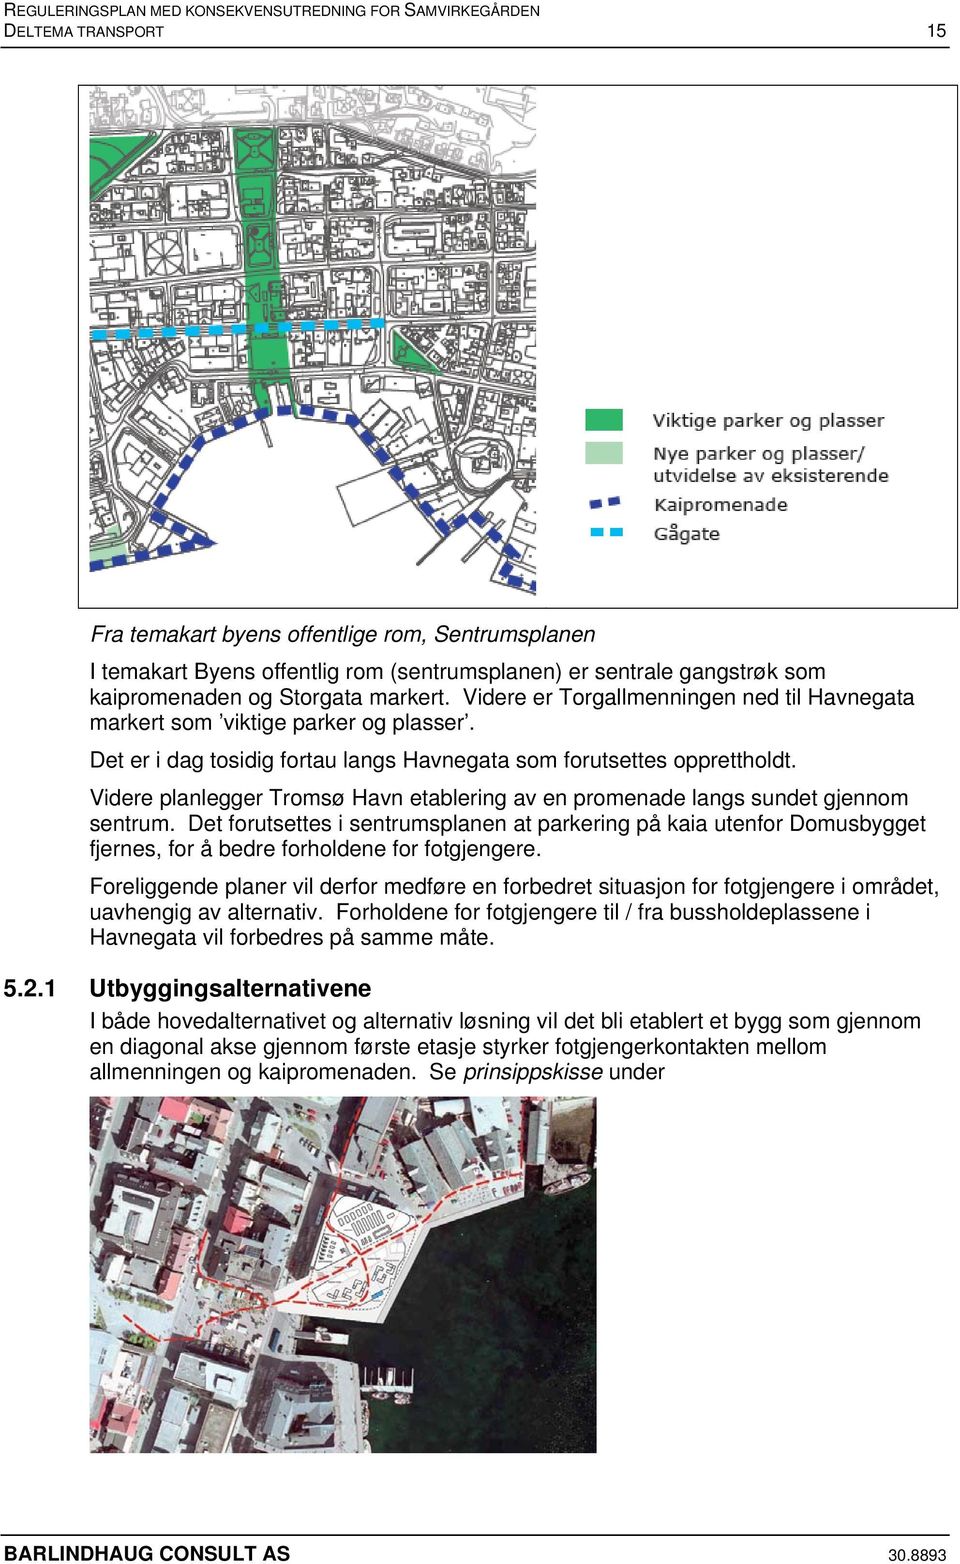 Videre planlegger Tromsø Havn etablering av en promenade langs sundet gjennom sentrum.